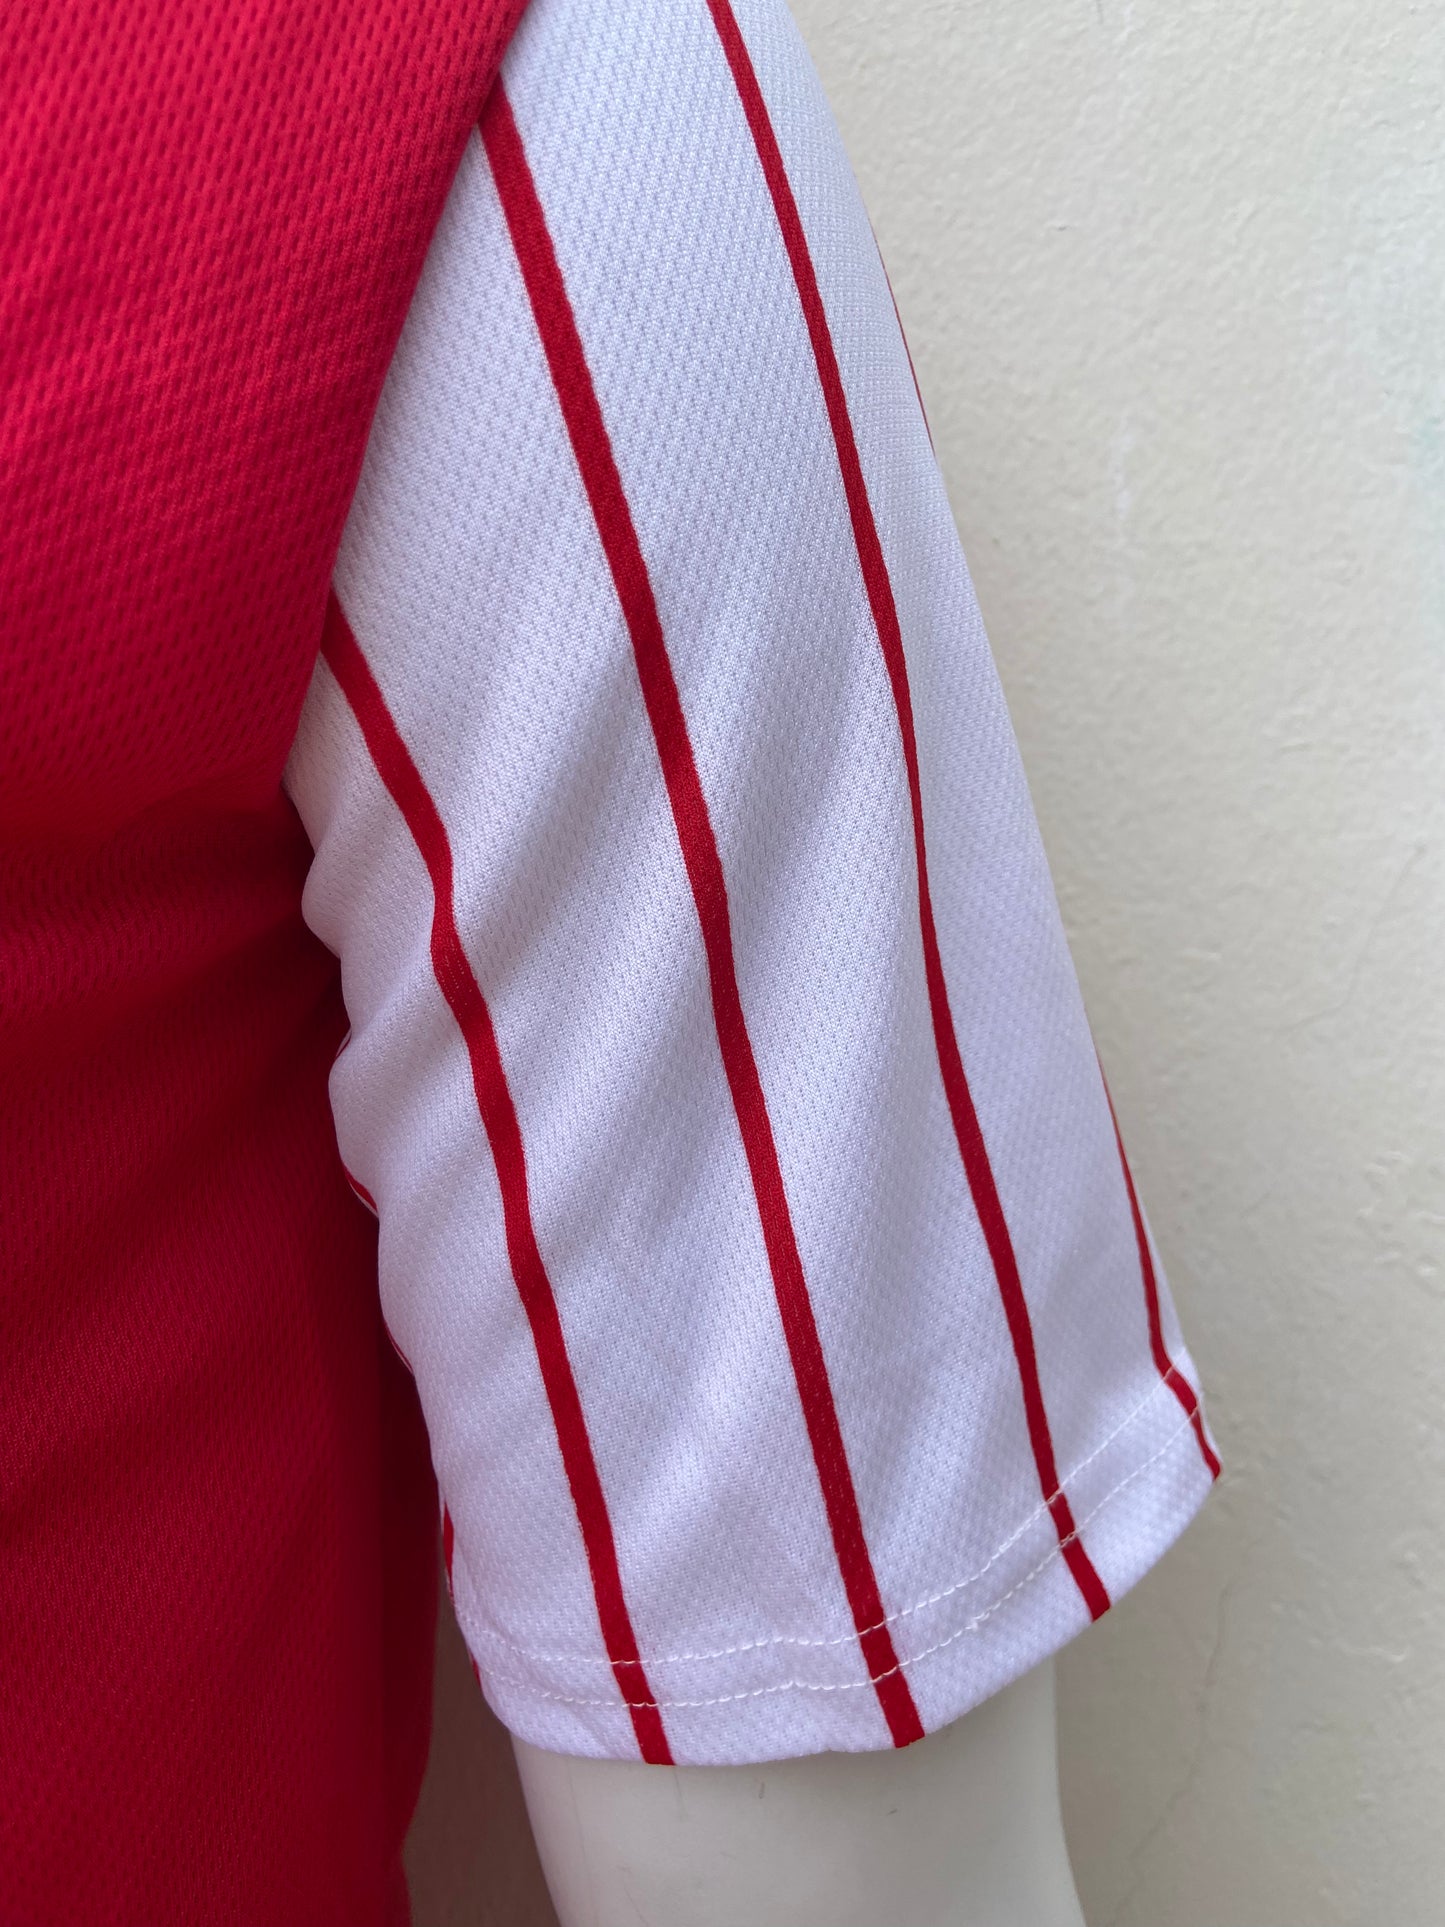 T-shirt/chaqueta Rue21 original de color rojo cuello V con mangas blancas y rayas rojas botonea al frente diseño de letra EPIC en color blanco al frente y EPIC SINCE FOREVER 1991 en la parte de atras